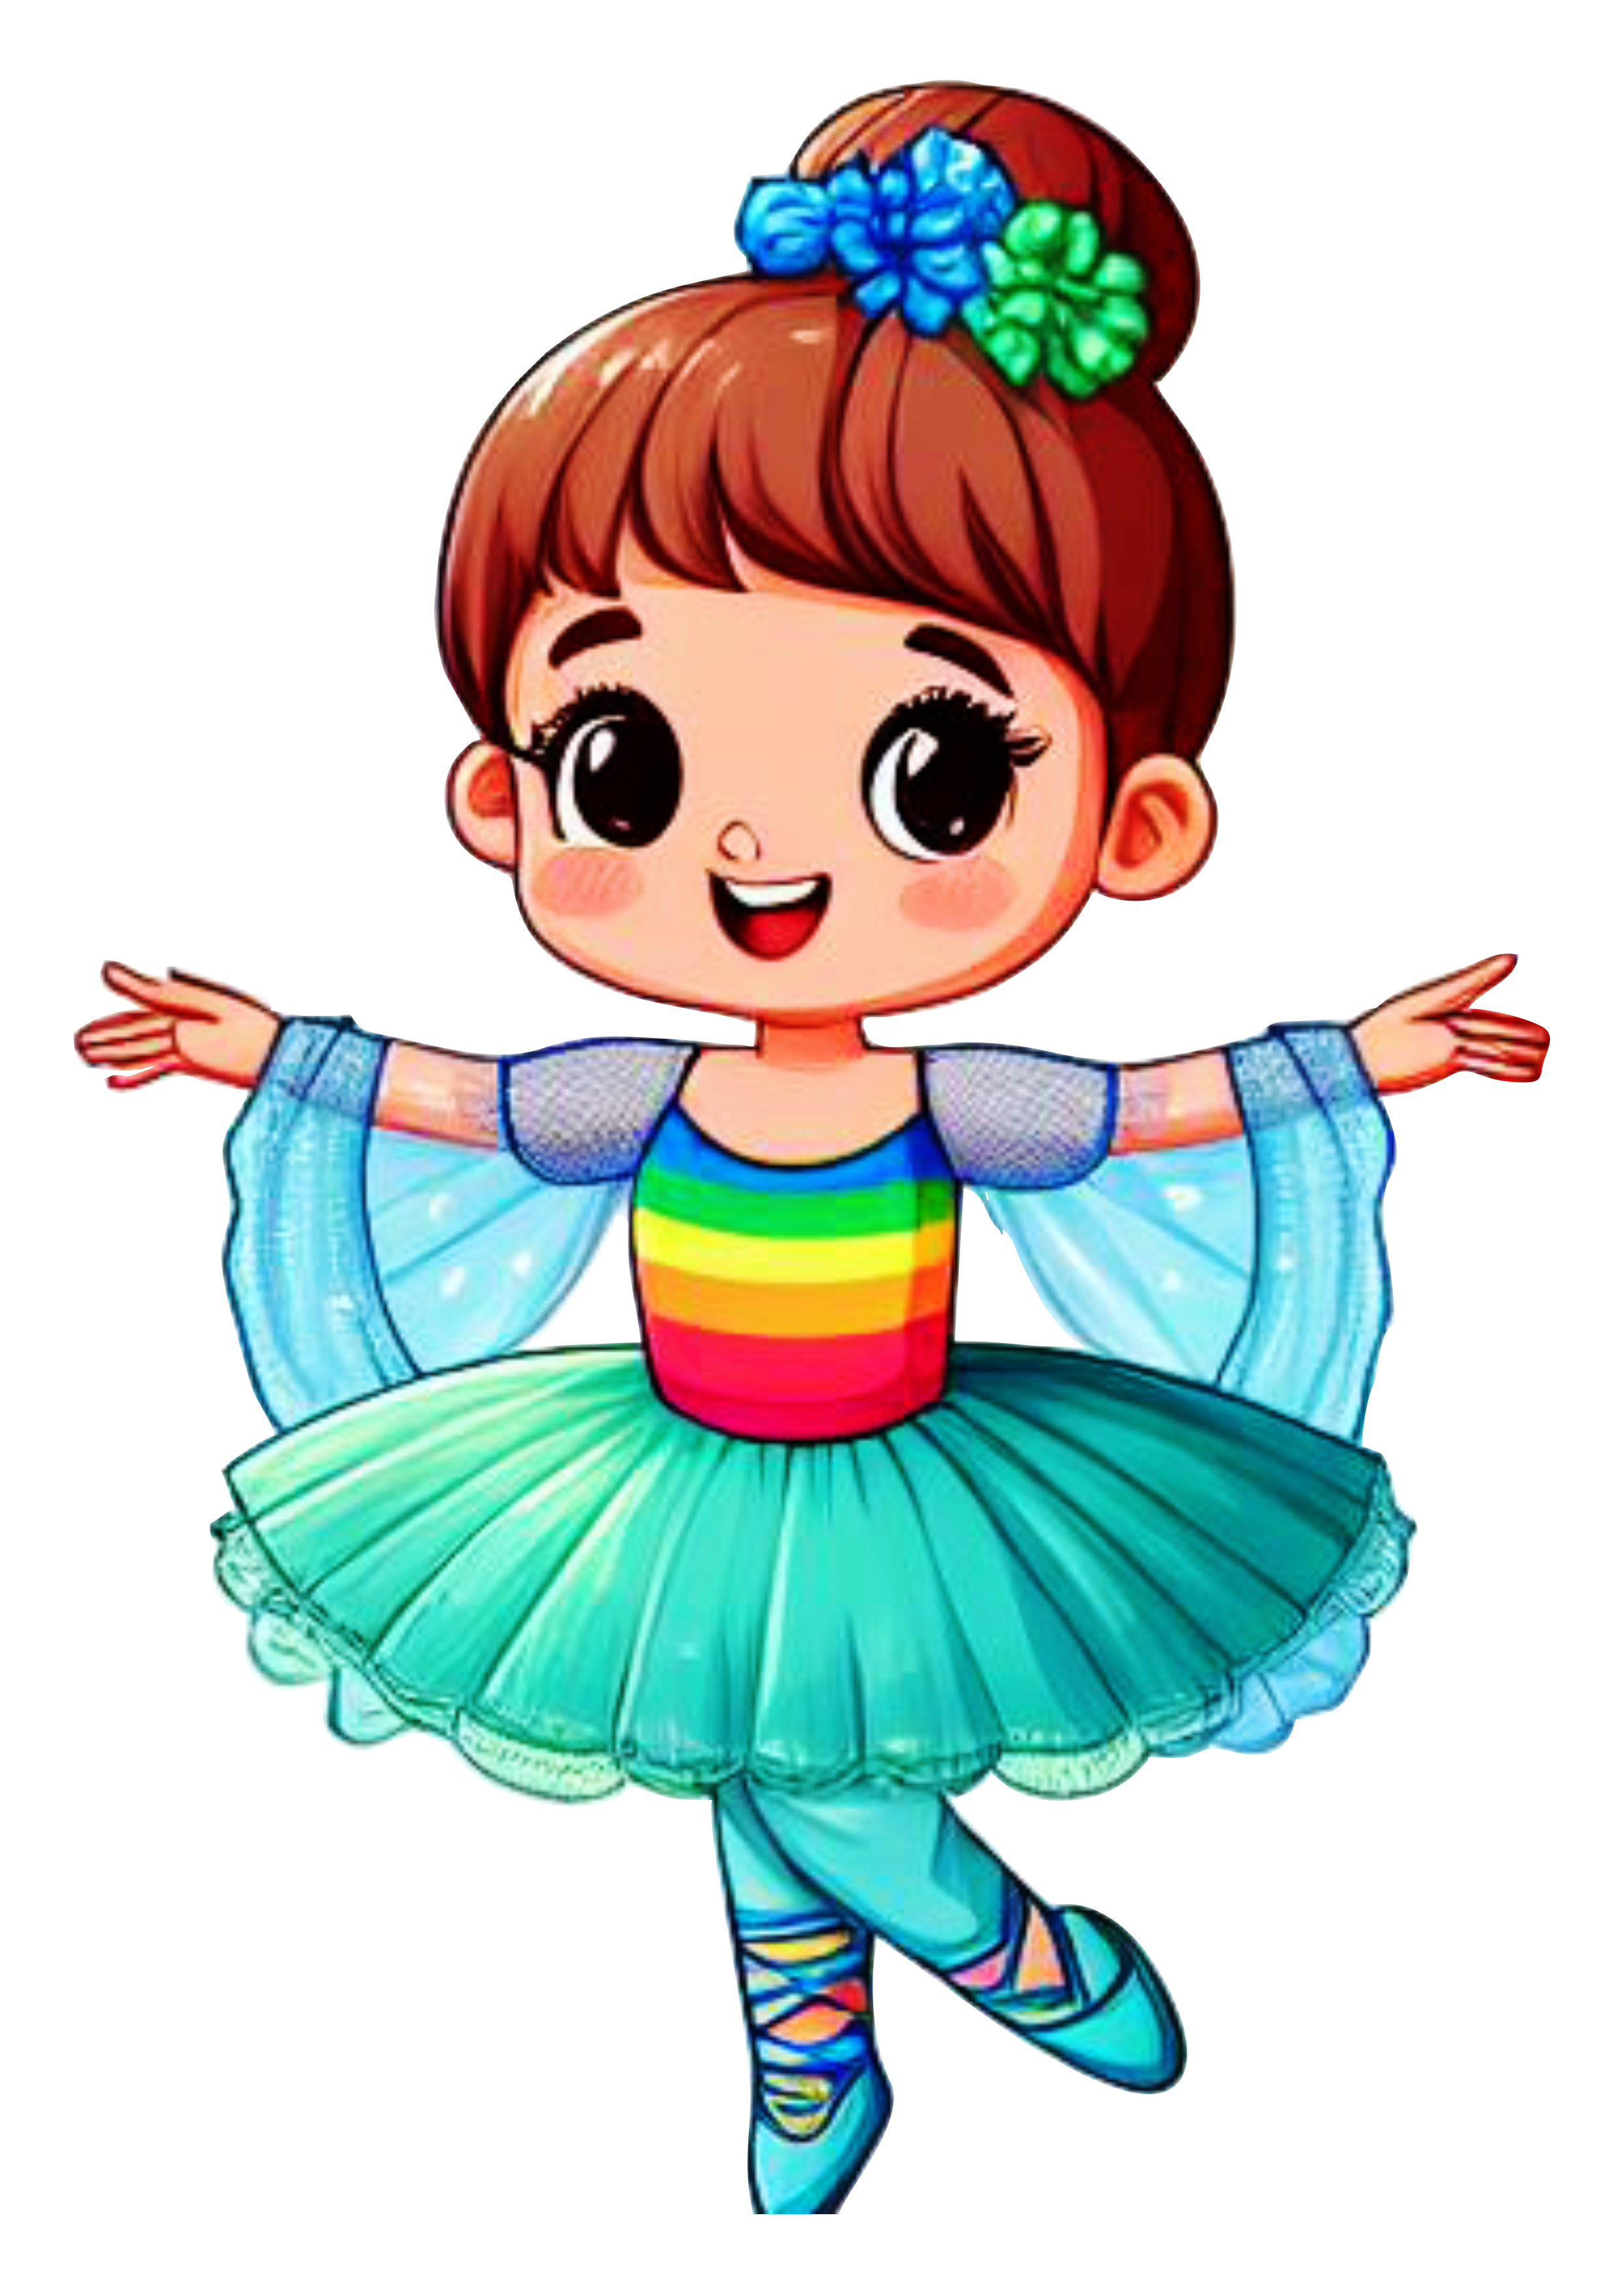 Bailarina menina com roupa colorida arco-íris desenho infantil png image design artes gráficas ilustração